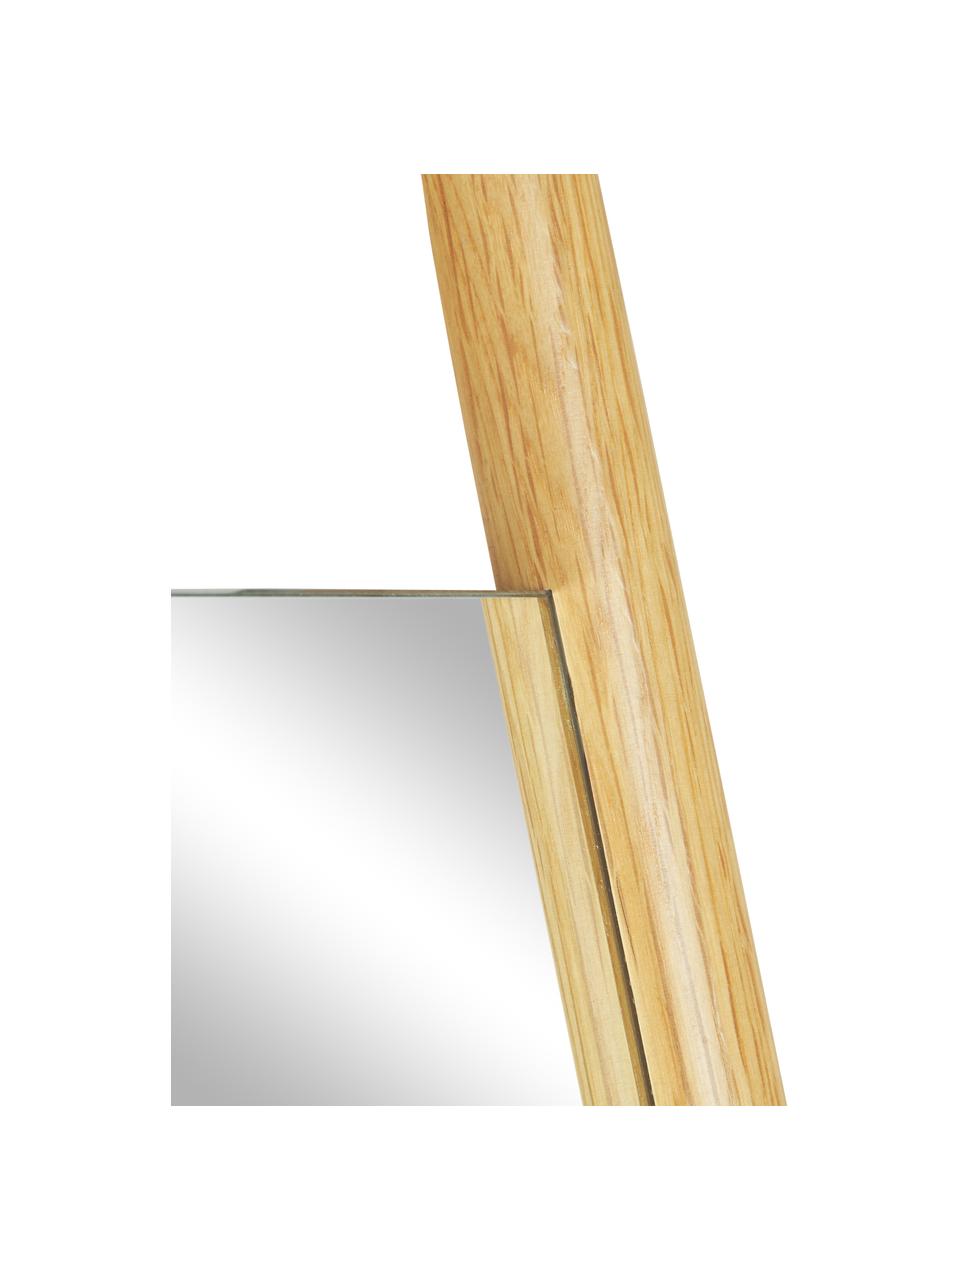 Eckiger Anlehnspiegel Elin mit Eichenholz-Streben, Rahmen: Eichenholz, Rückseite: Mitteldichte Holzfaserpla, Spiegelfläche: Spiegelglas, Eichenholz, B 45 cm, H 170 cm